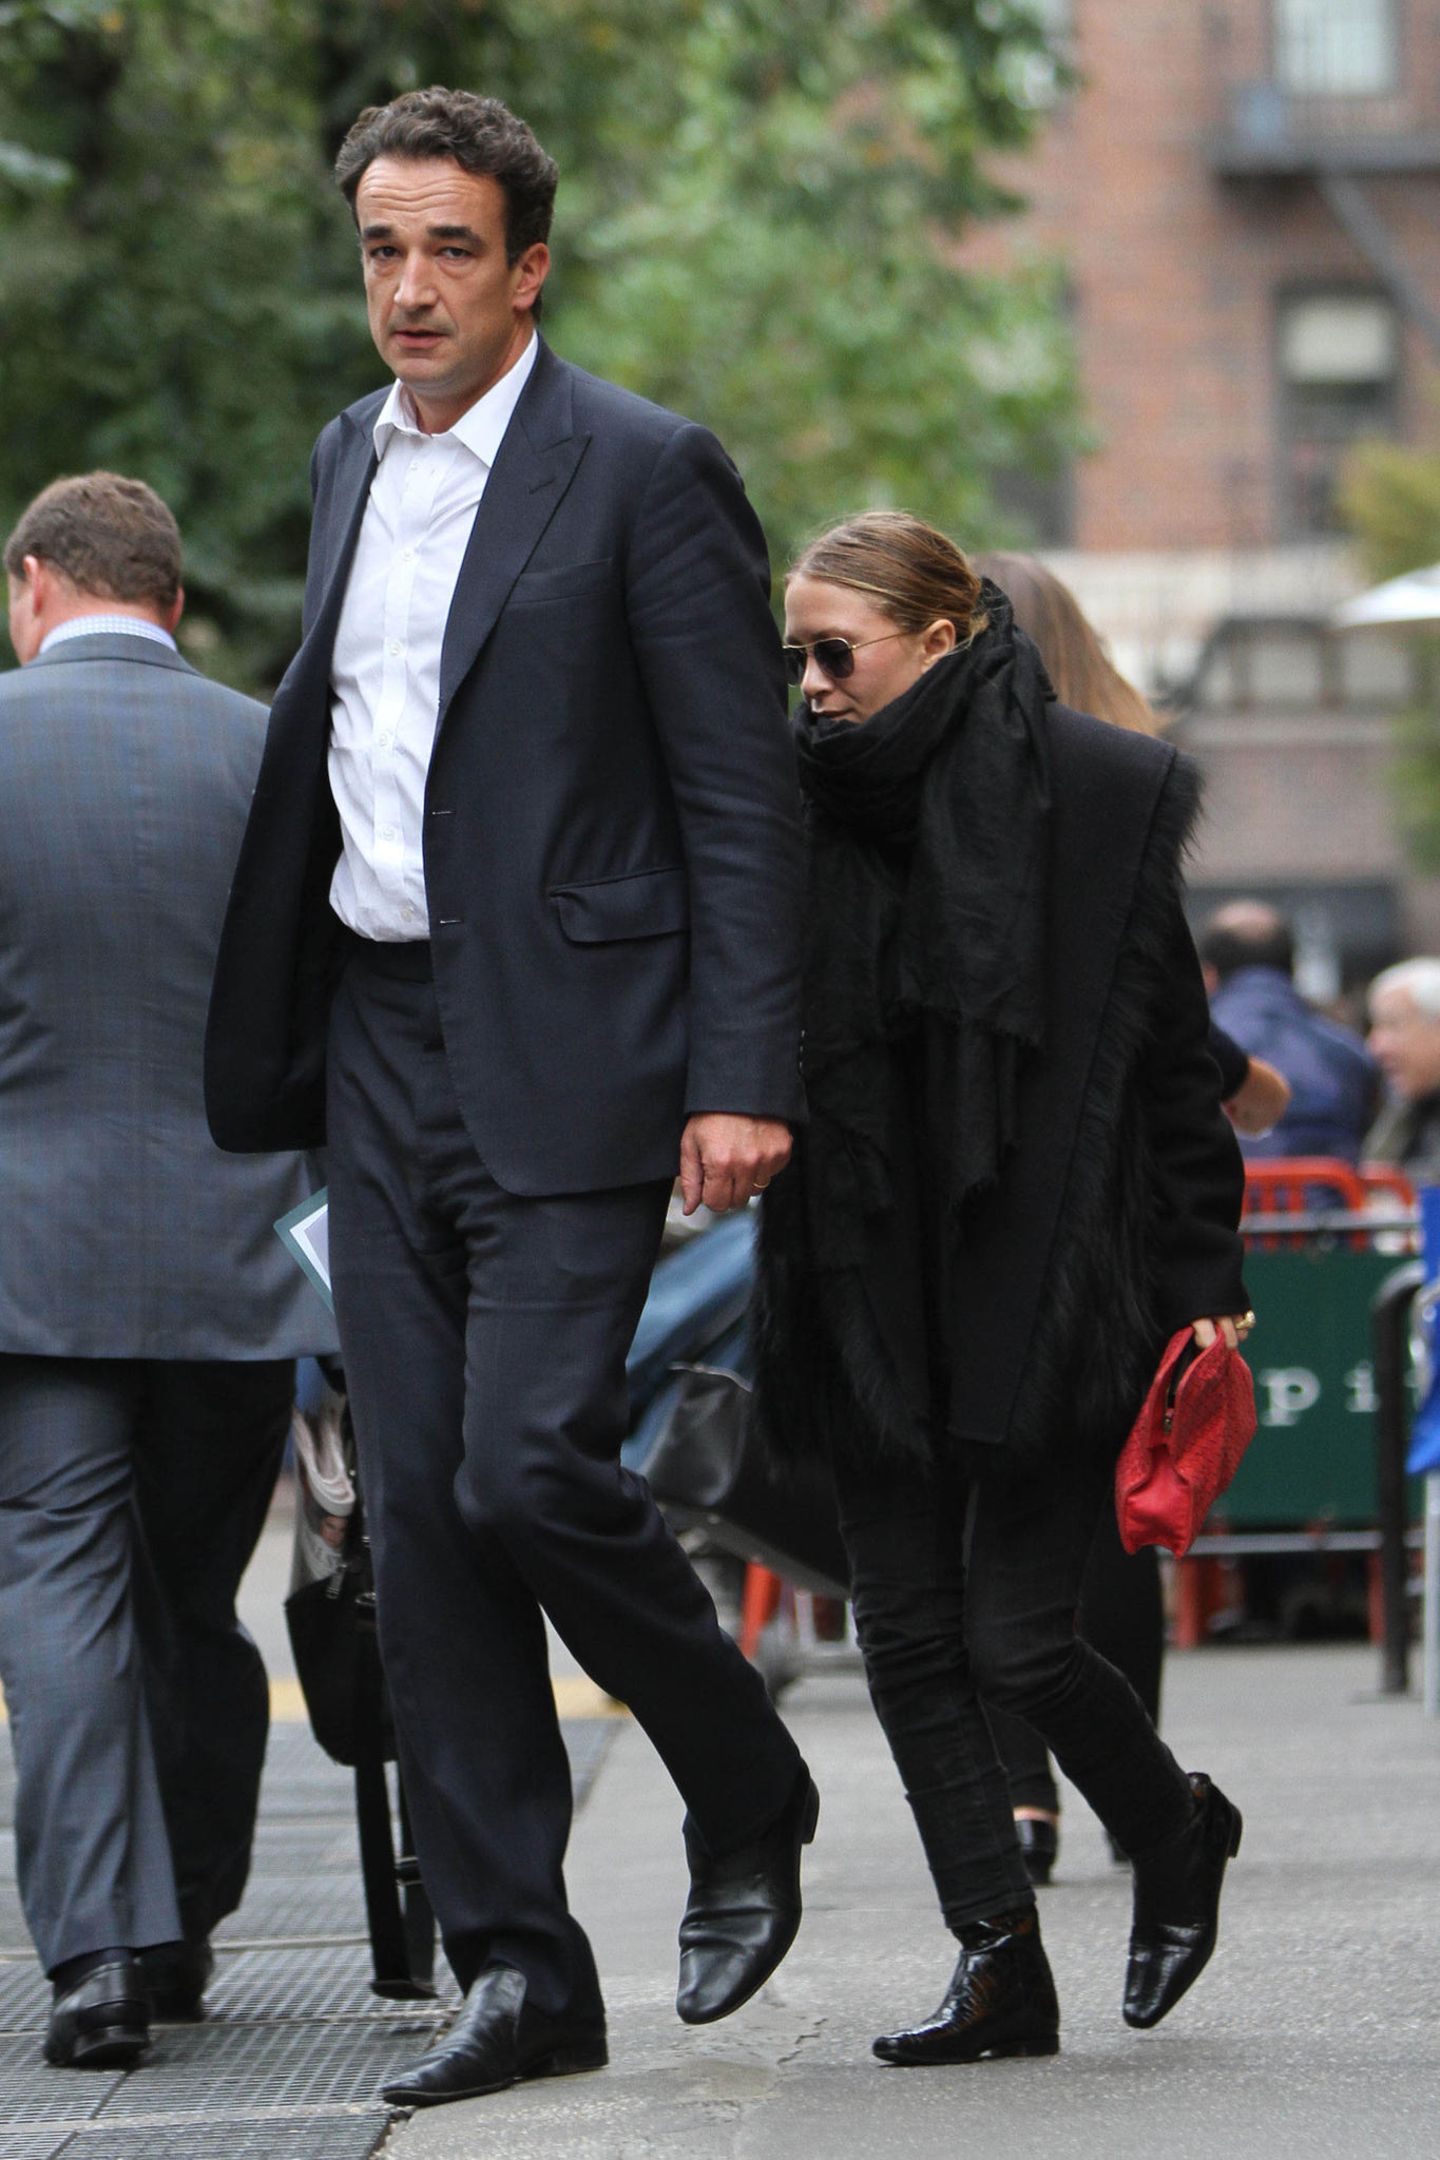 Olivier Sarkozy und Mary-Kate Olsen  Der ehemalige "Full House"-Star Mary-Kate Olsen hat laut US-Portal "Page Six" die Scheidung von Olivier Sarkozy, dem Halbbruder von Frankreichs Ex-Präsident Nicolas Sarkozy, eingereicht. Das Paar soll seit 2012 liiert und seit 2015 verheiratet gewesen sein.